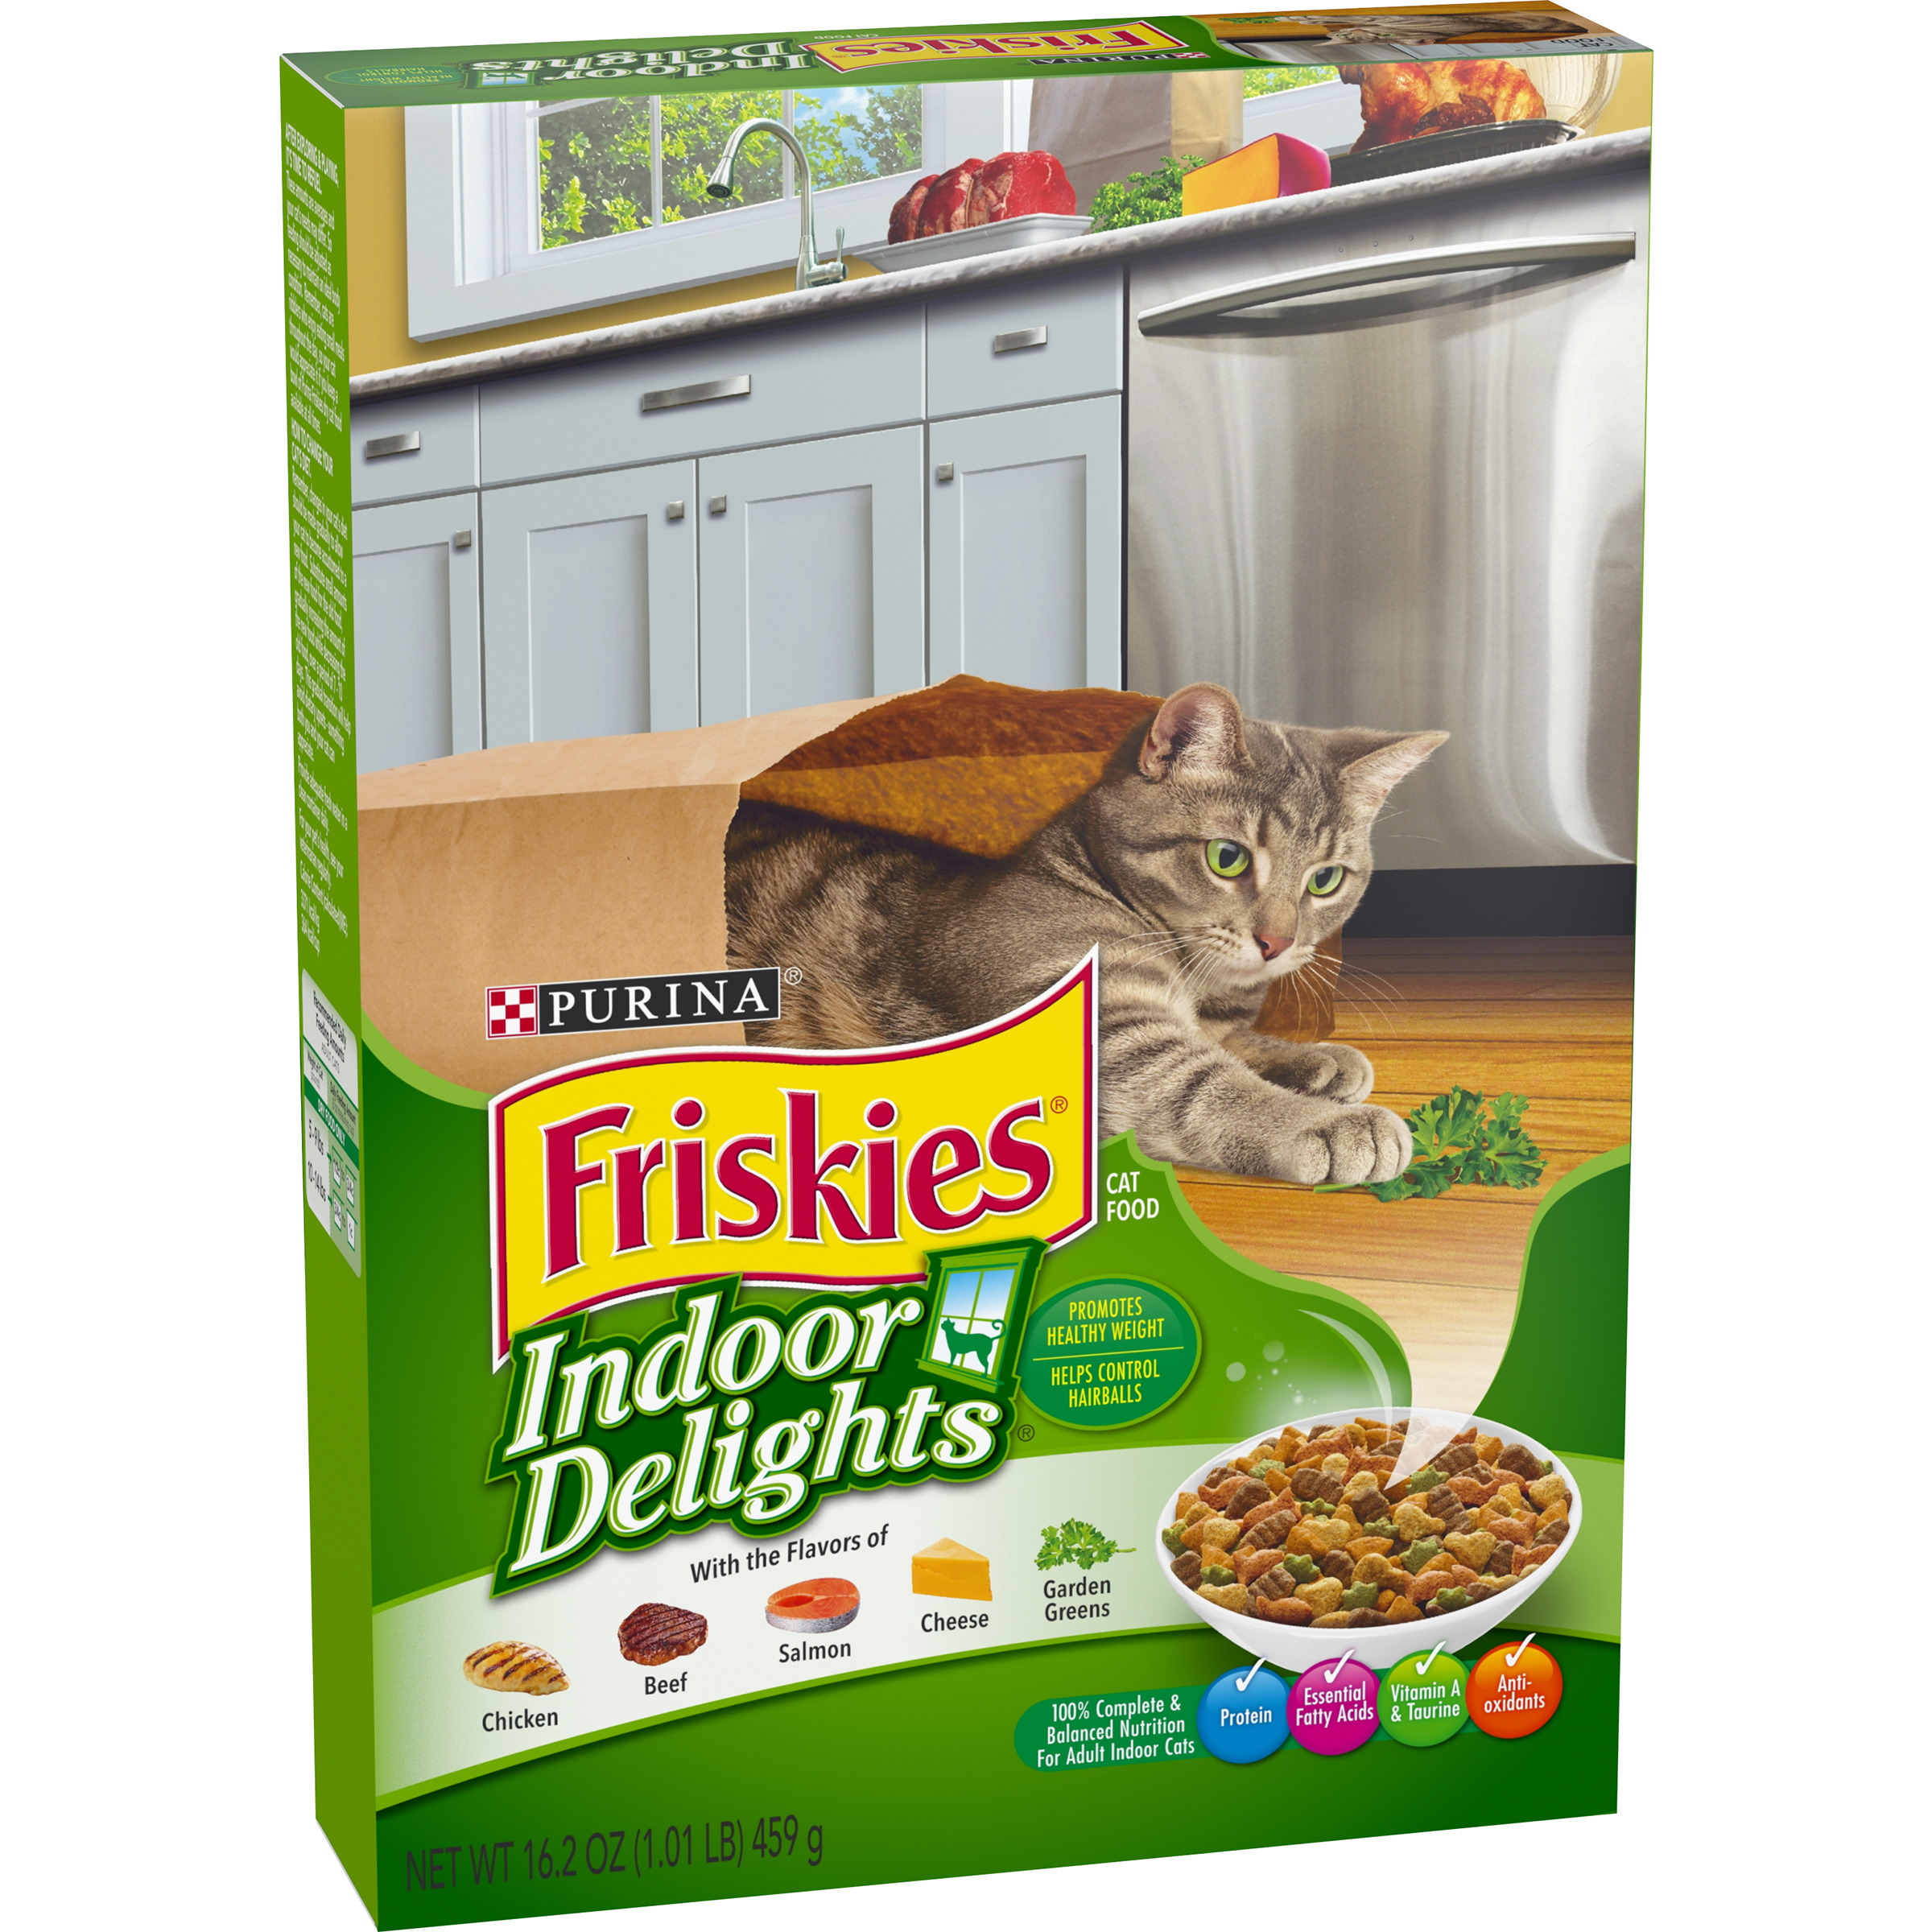 Purina Friskies Indoor Delights Cat Food 16.2 oz. Box La Comprita